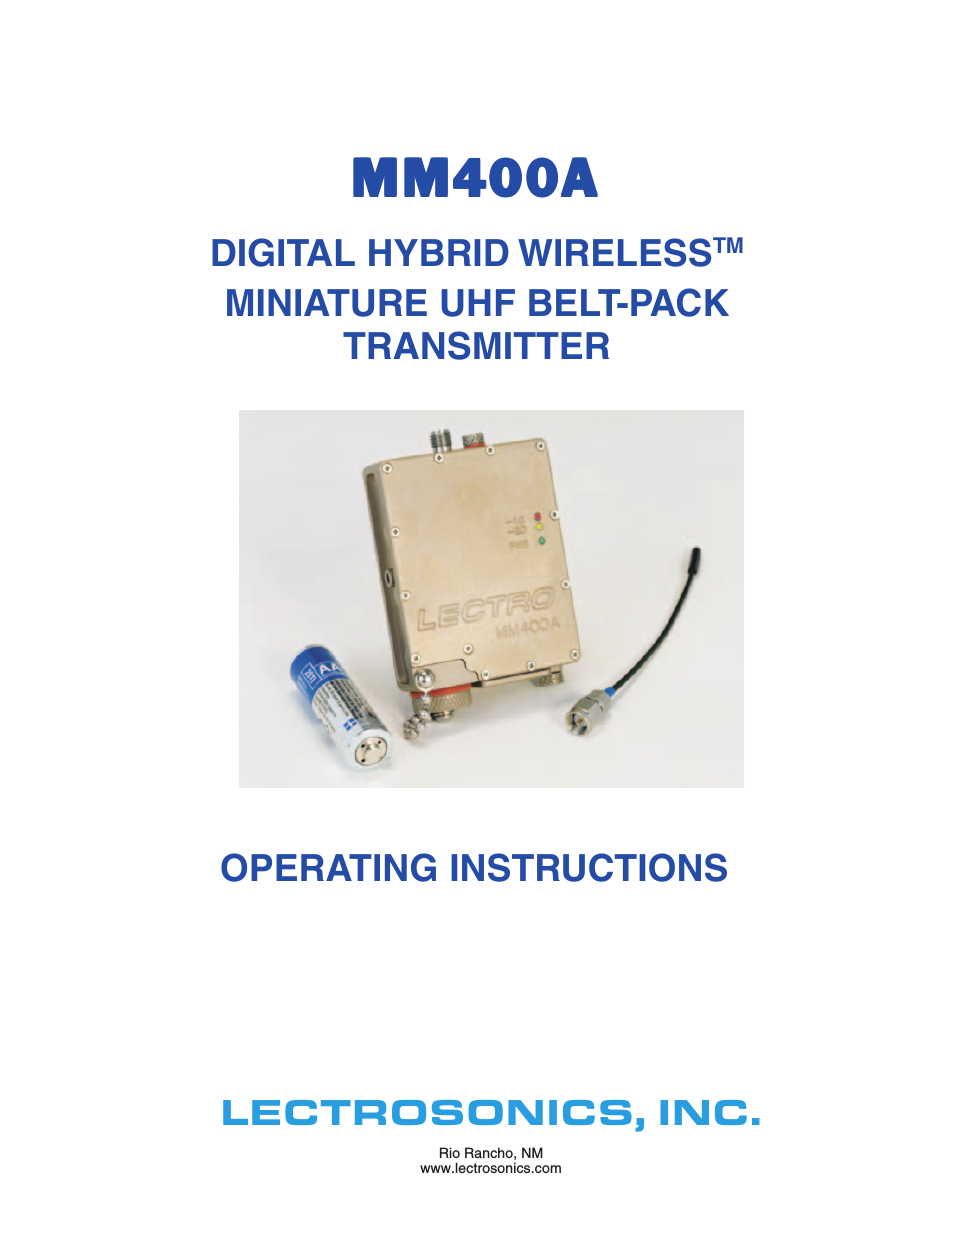 MM400a - Manual